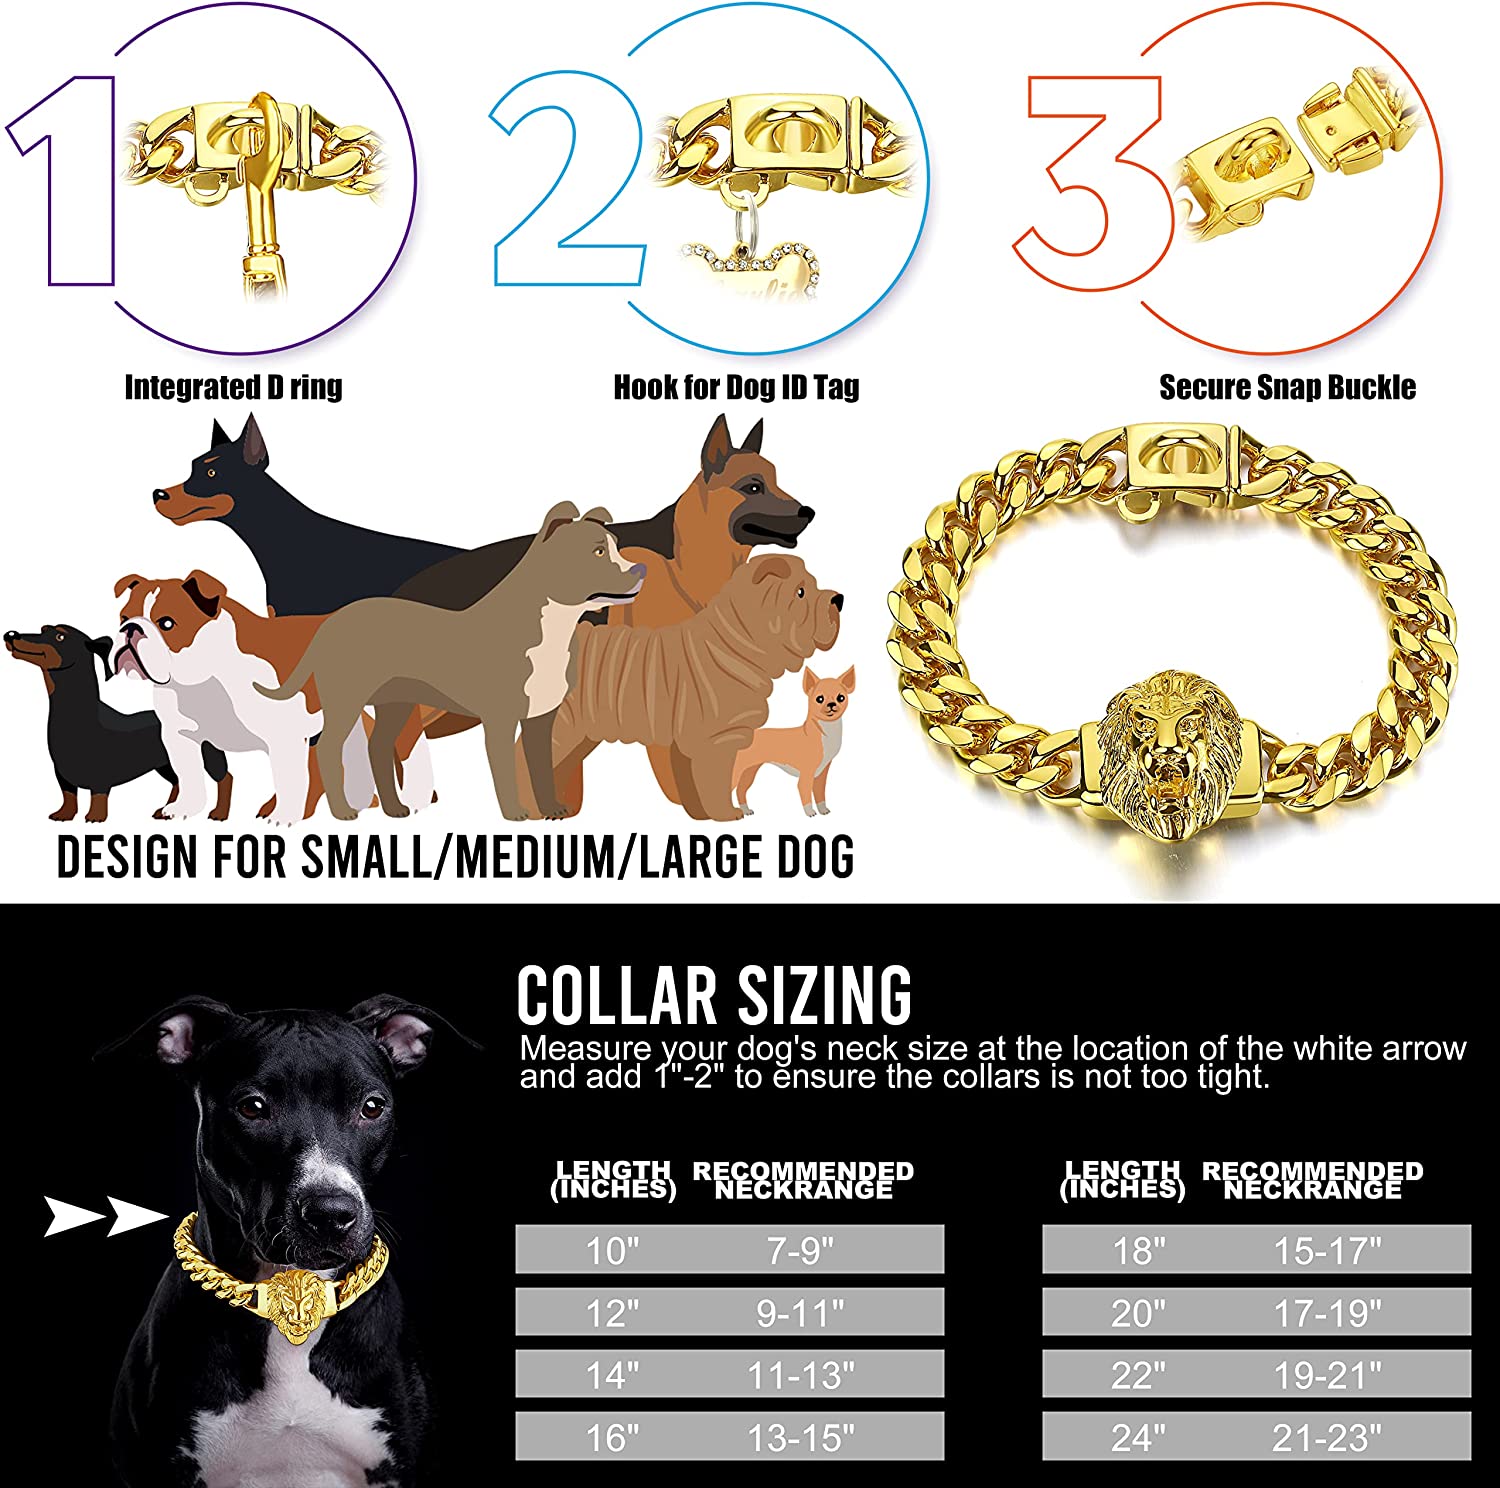 زنجیر از جنس استیل ضد زنگ جلا داده شده با دست طلای 18 عیار با سگک طرح شیر سر، توصیه می شود برای آموزش یا راه رفتن سگ ها.